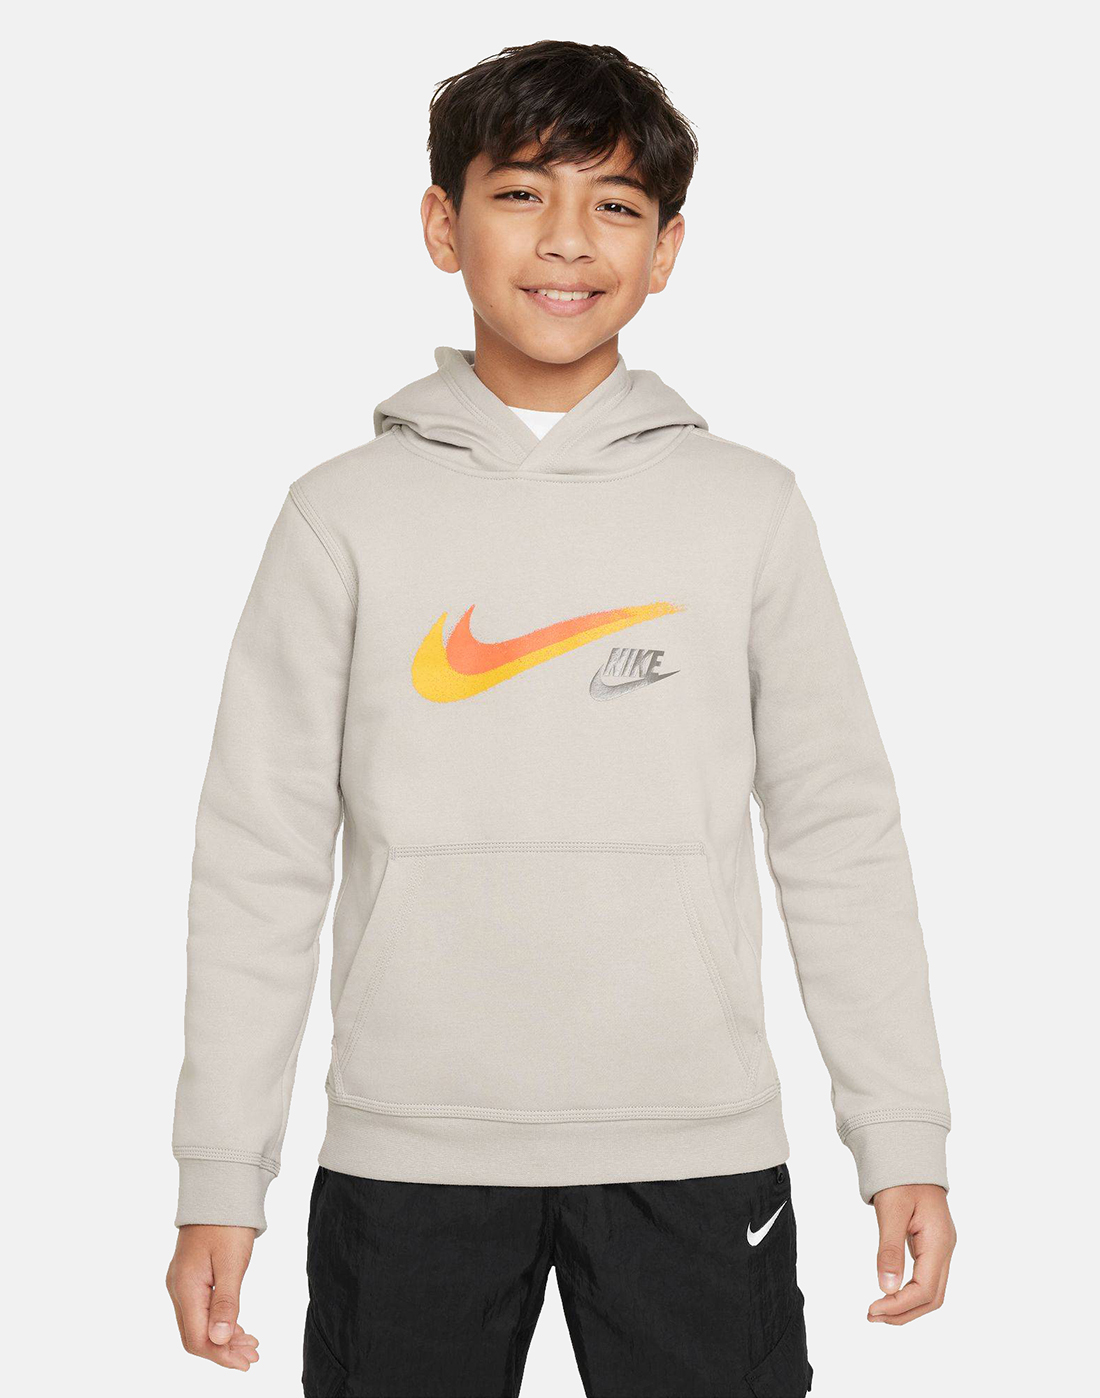 Nike Older Boys Fleece Hoodie - Grey | Life Style Sports UK